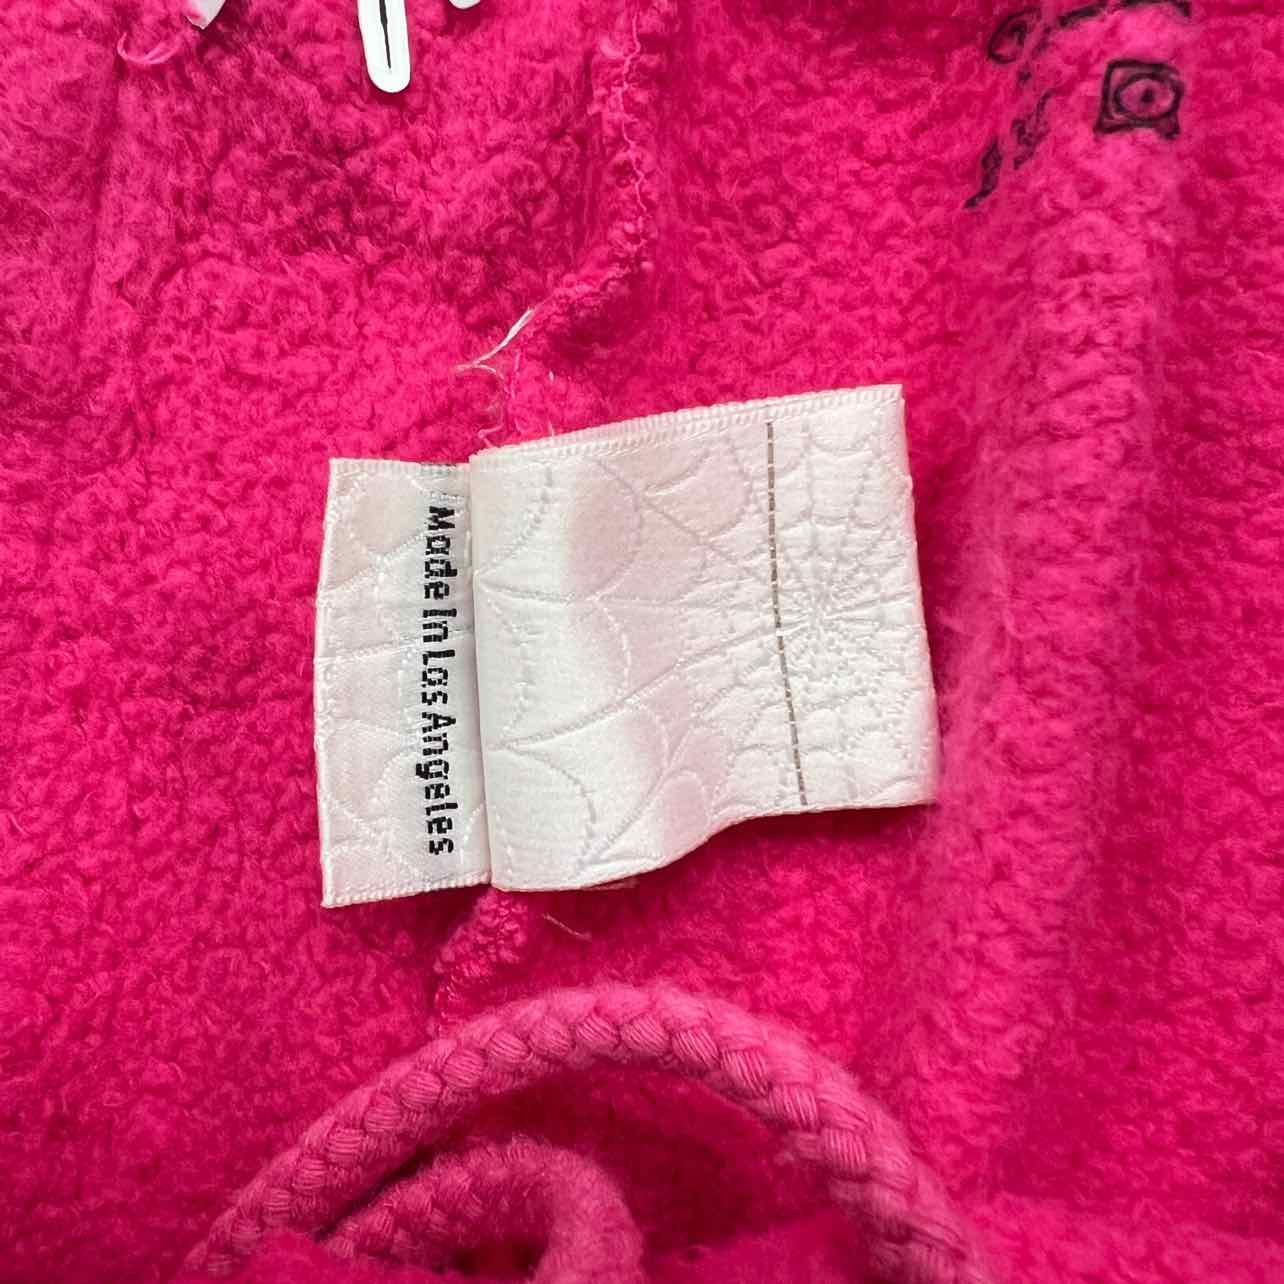 Sp5der Sweatpants "P*NK" Pink New Size M